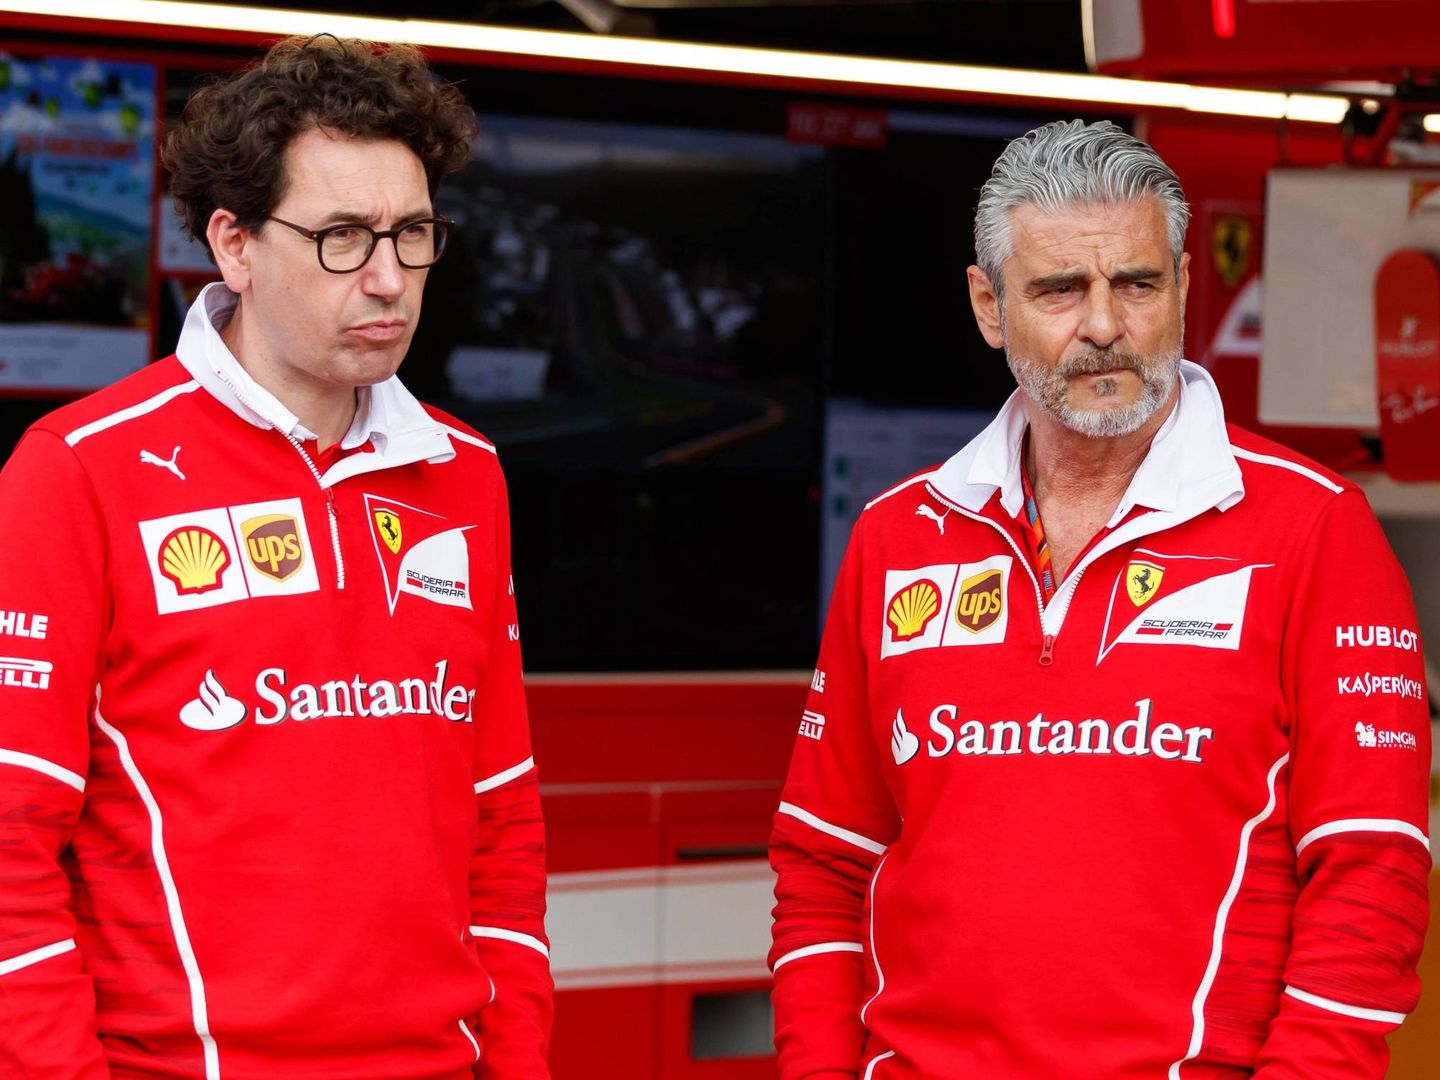 Desde el desencuentro entre Mattia Binotto (izquierda) y Maurizio Arrivabene (derecha) en la dirección de Ferrari, en la Scuderia siempre ha primado el perfil bajo. (Reuters/Hamad I Mohammed)